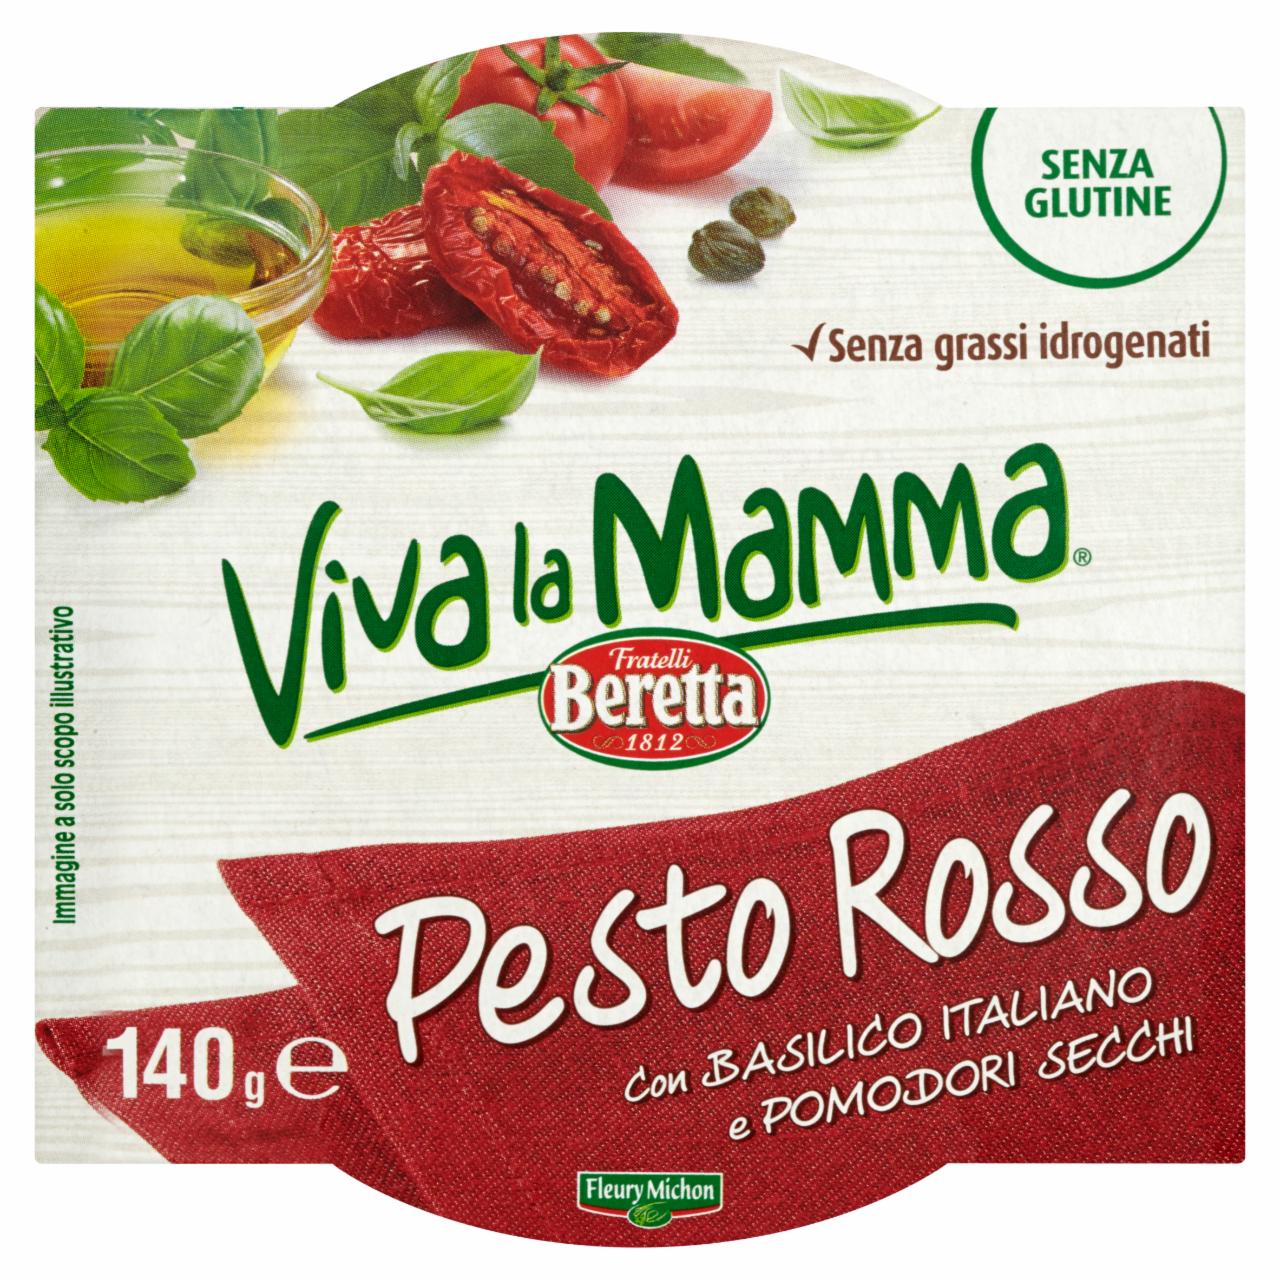 Photo - Fratelli Beretta Viva la Mamma Pesto Rosso 140 g